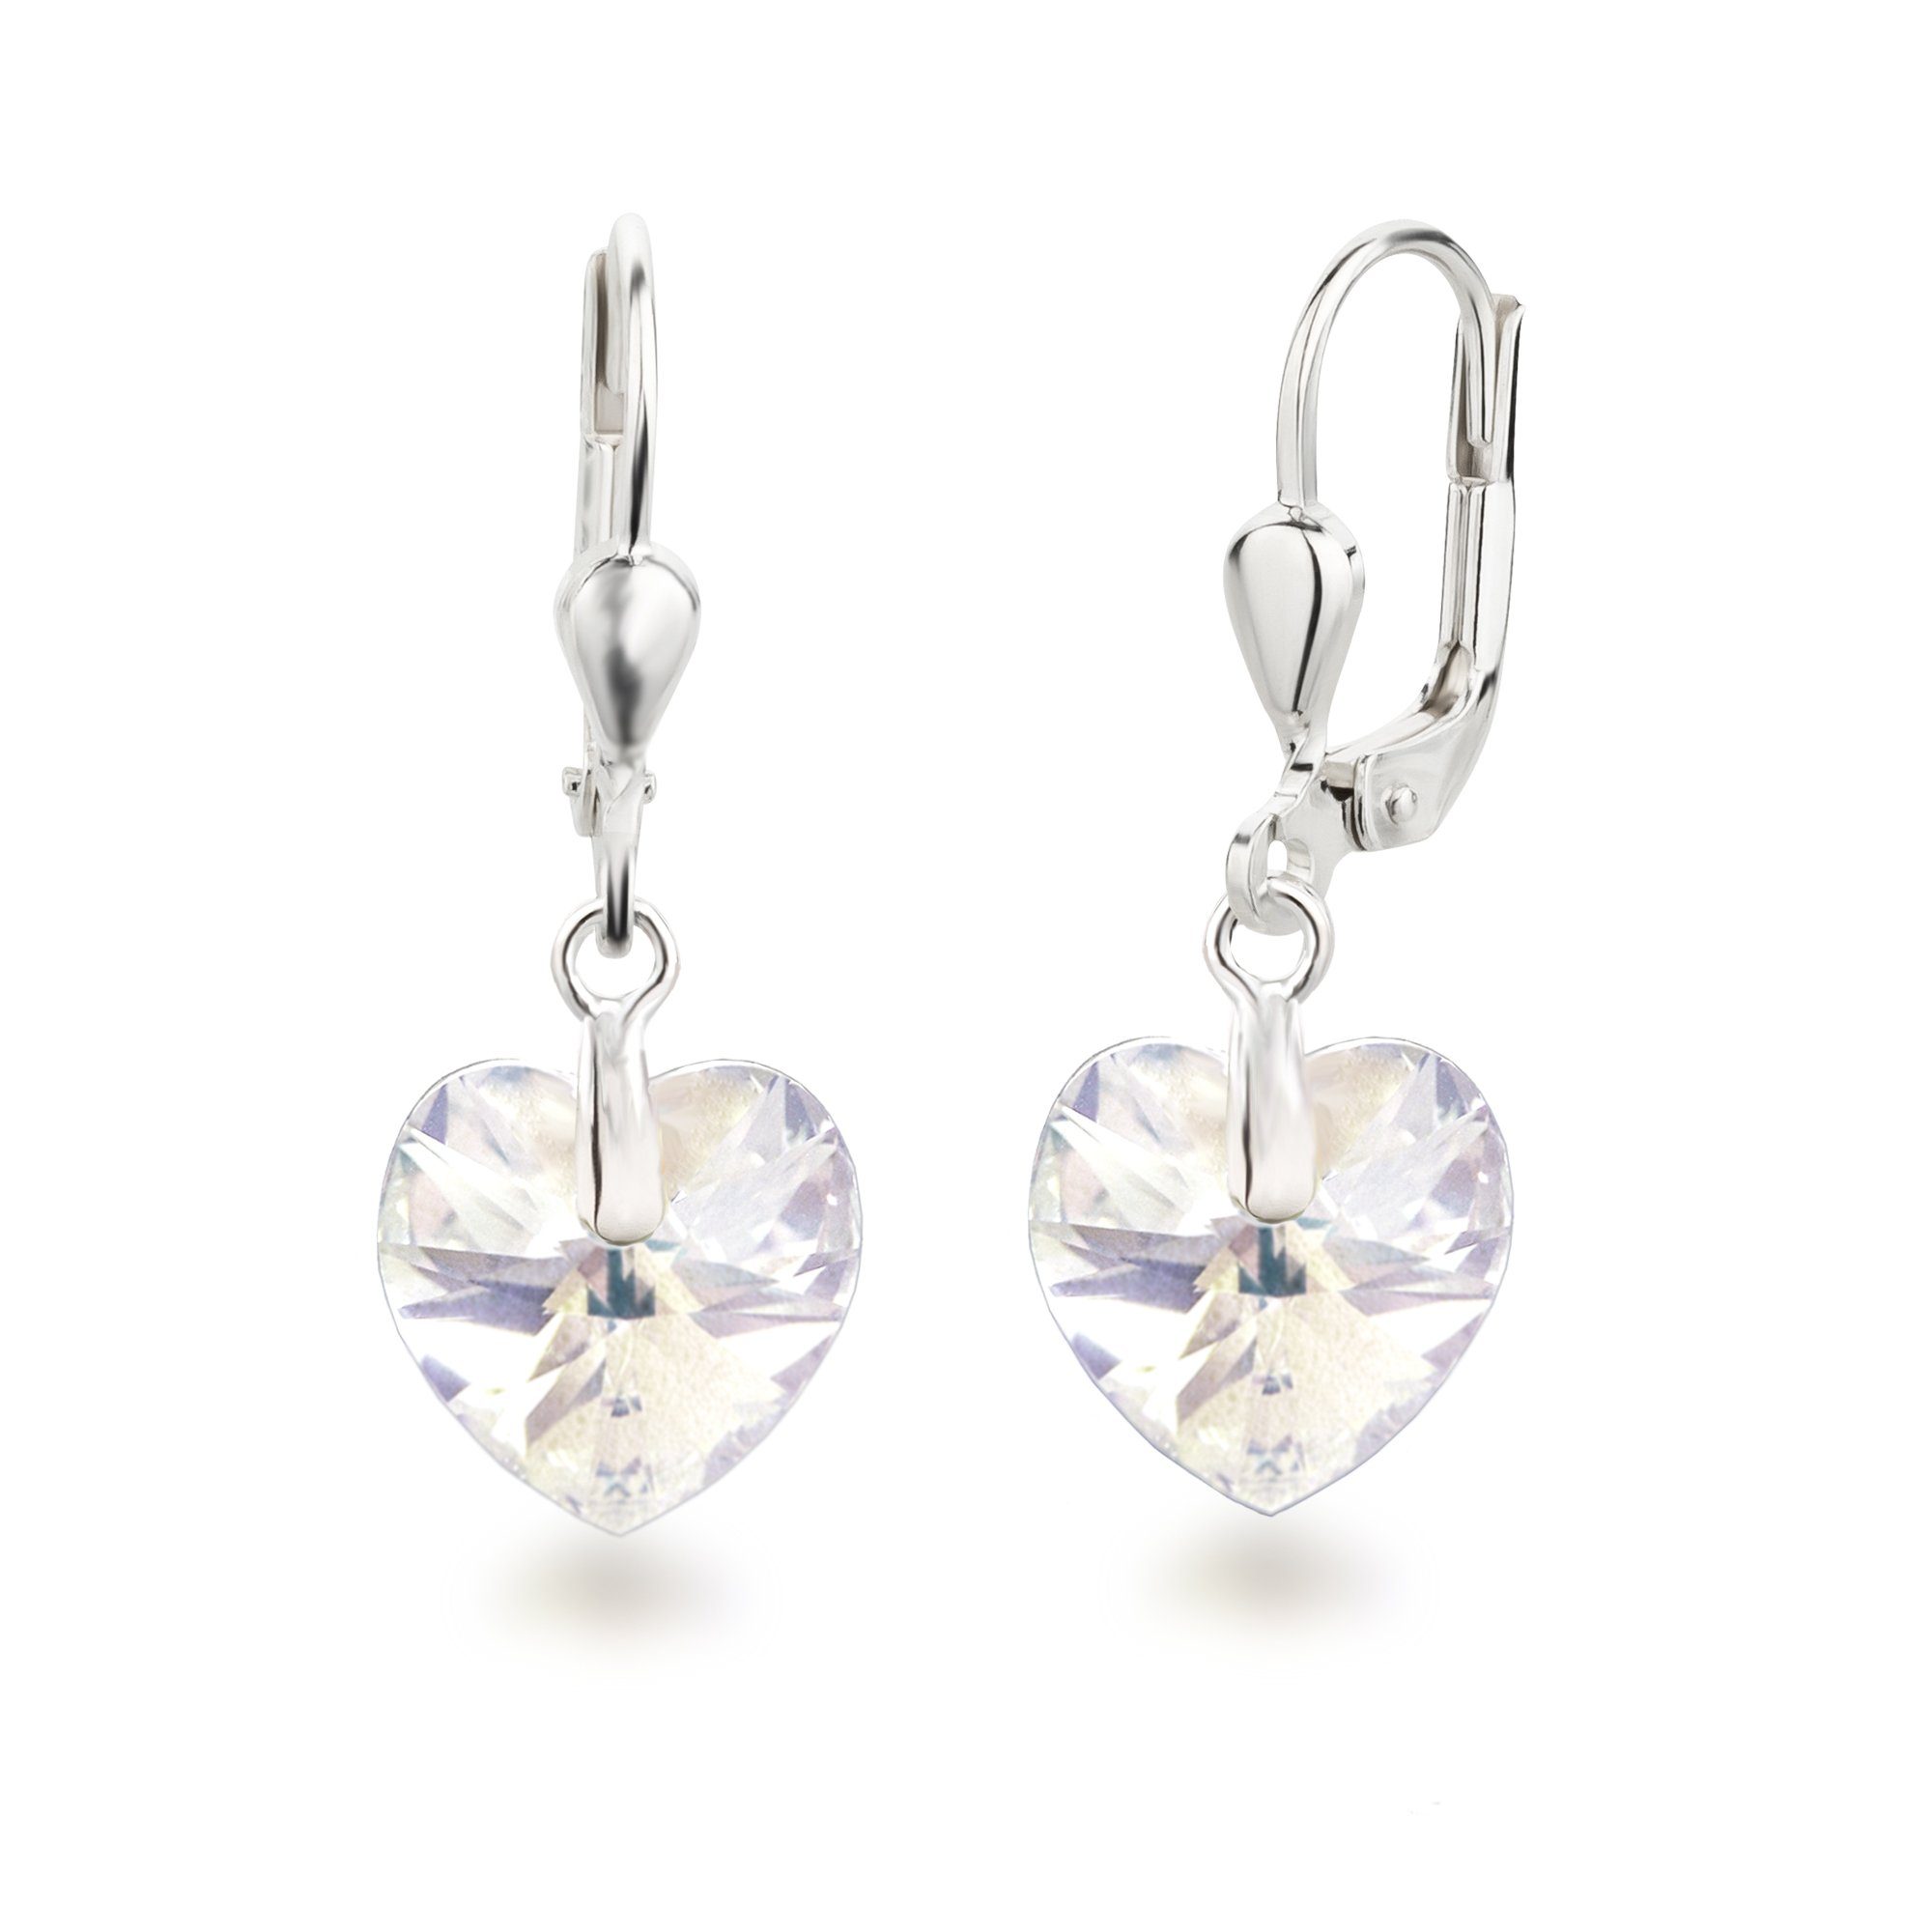 Schöner-SD Paar Ohrhänger Ohrringe hängend mit Herz Kristall 10mm für Damen und Mädchen, 925 Silber Crystal Moonlight